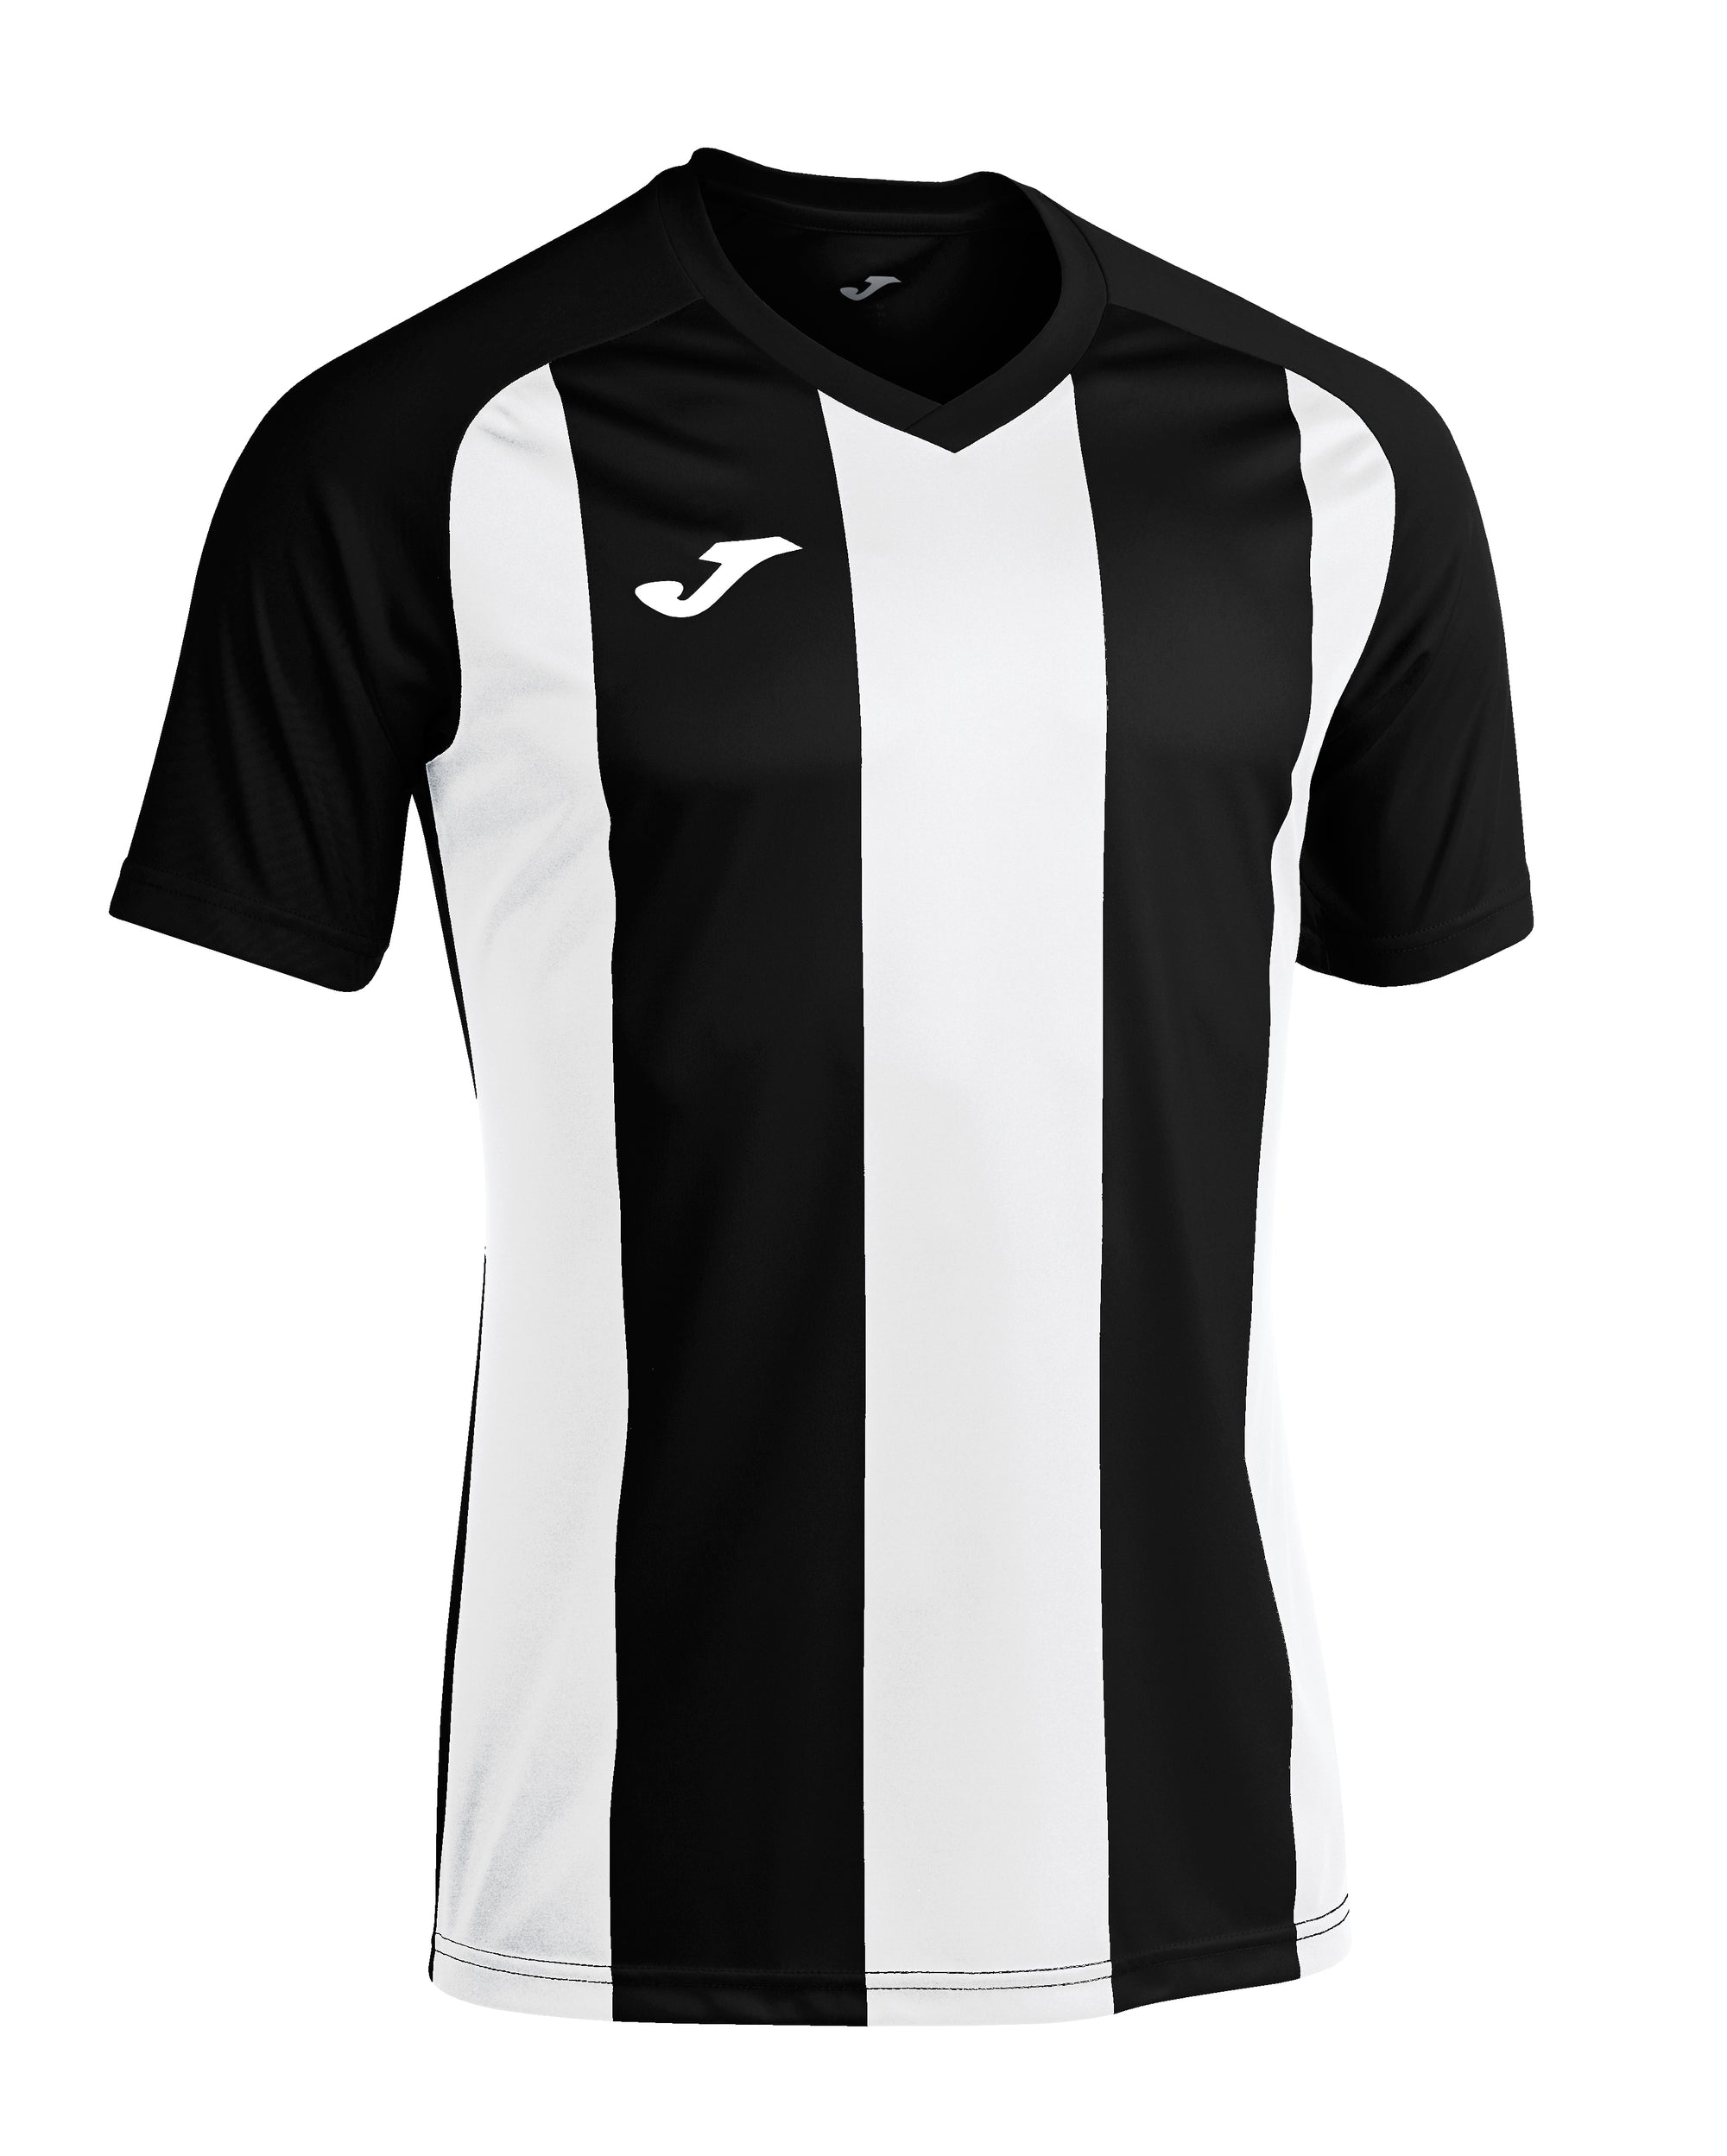 Joma Pisa II Short Sleeved T-Shirt - Black/White